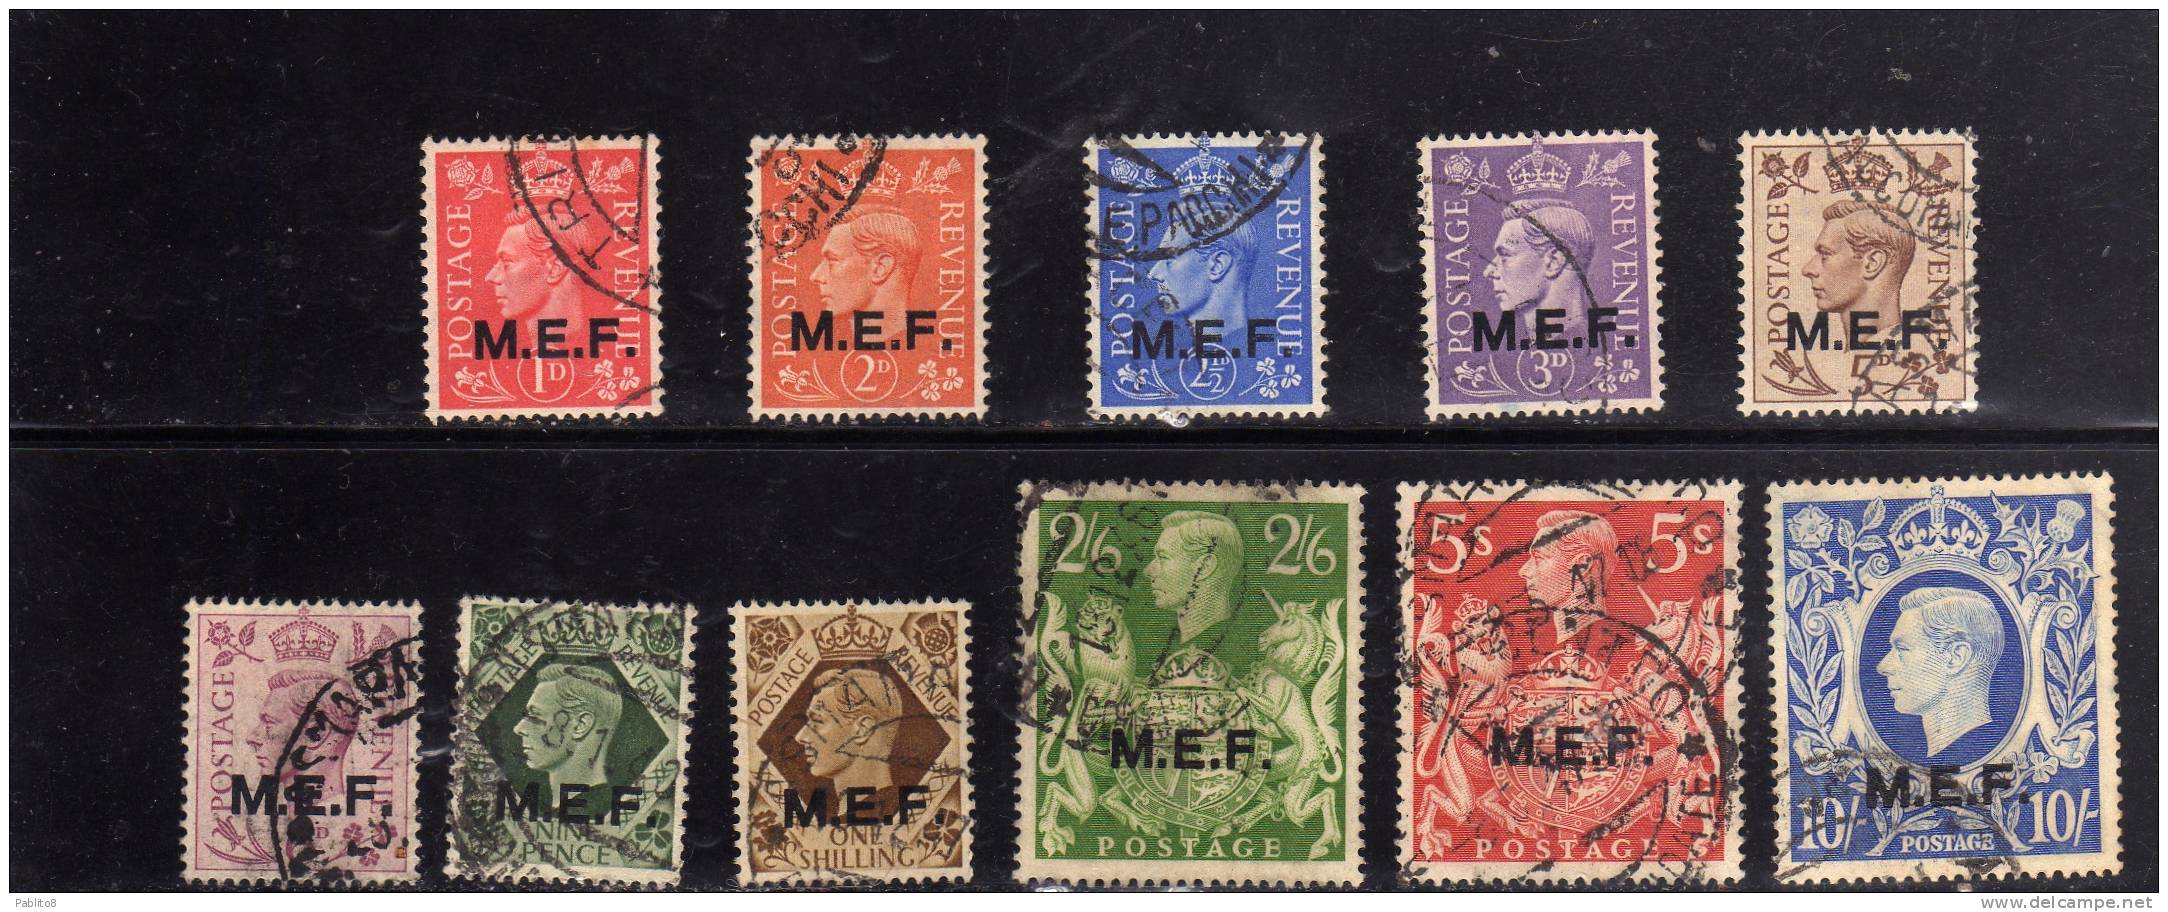 MEF M.E.F. 1943 - 1947 SERIE COMPLETA COMPLETE SET USATA USED OBLITERE' - Britische Bes. MeF